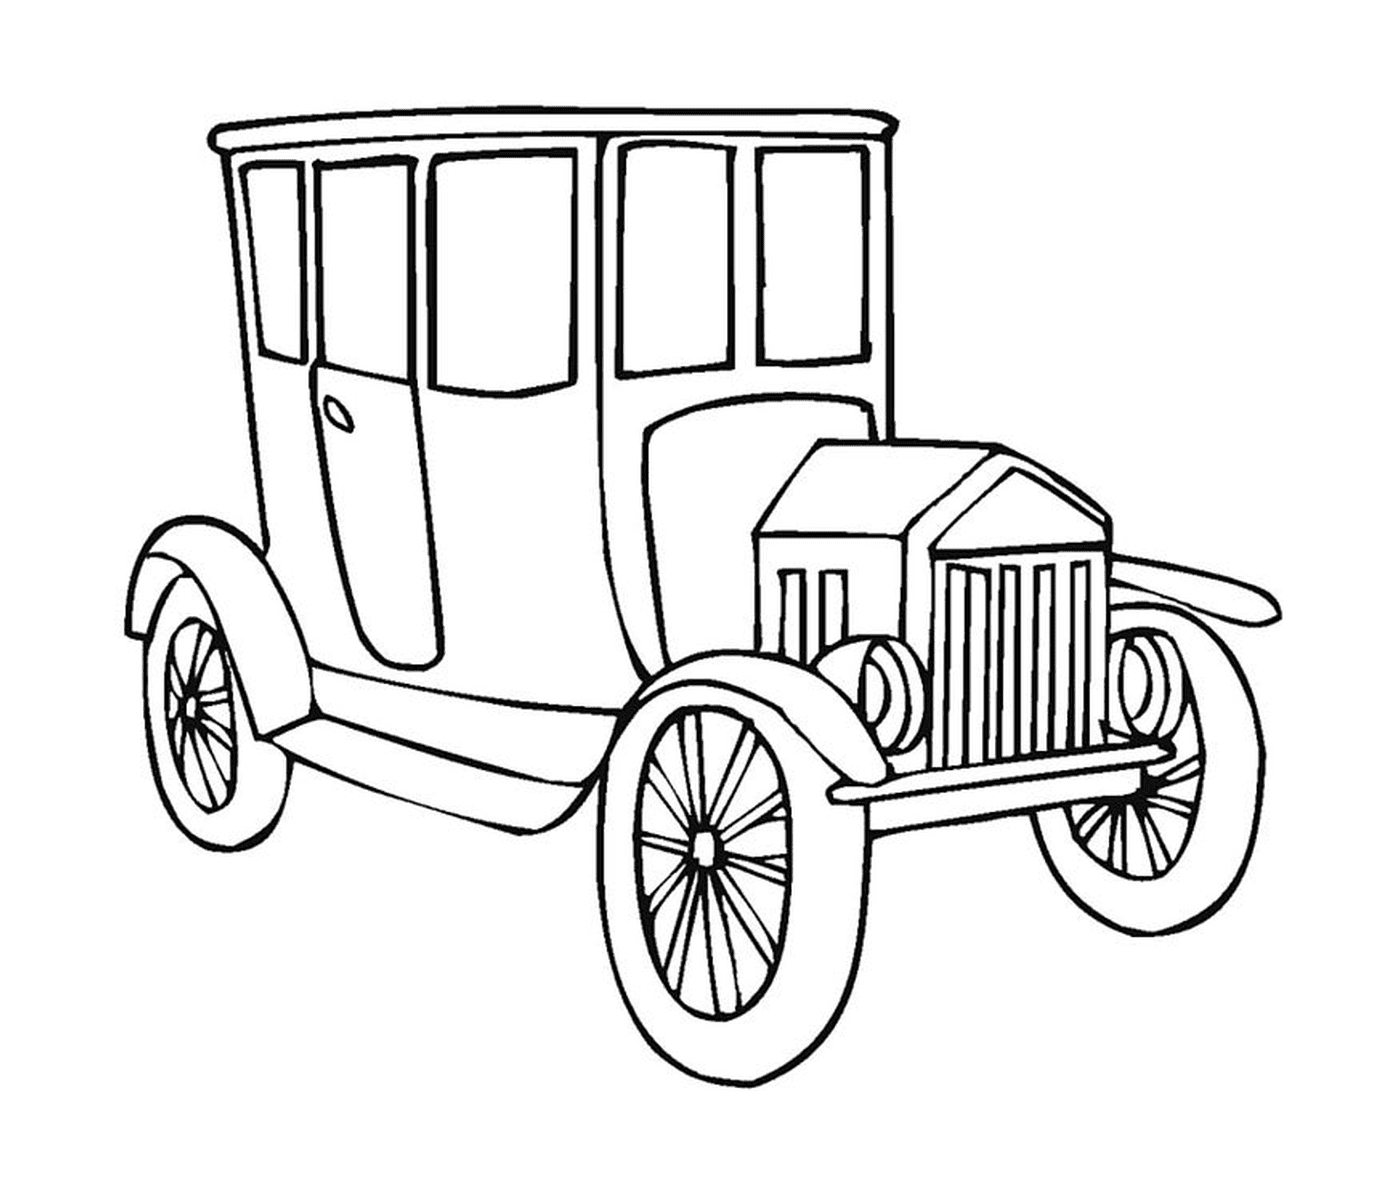  Old car drawn 